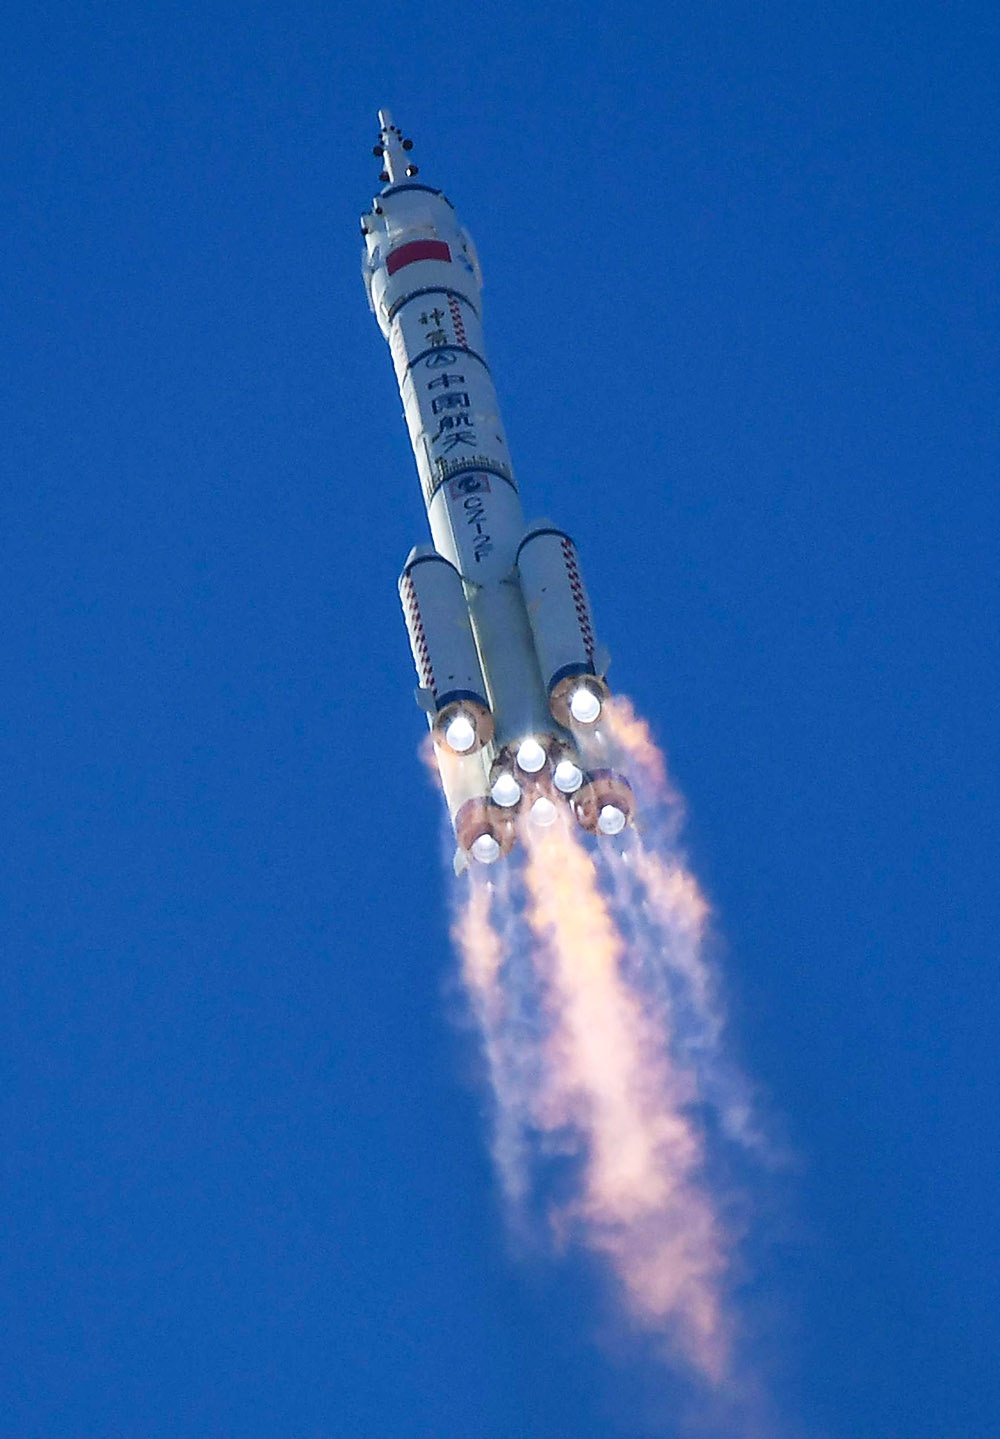 长征二号 f 遥十二运载火箭搭载着神舟十二号载人航天飞船发射升空